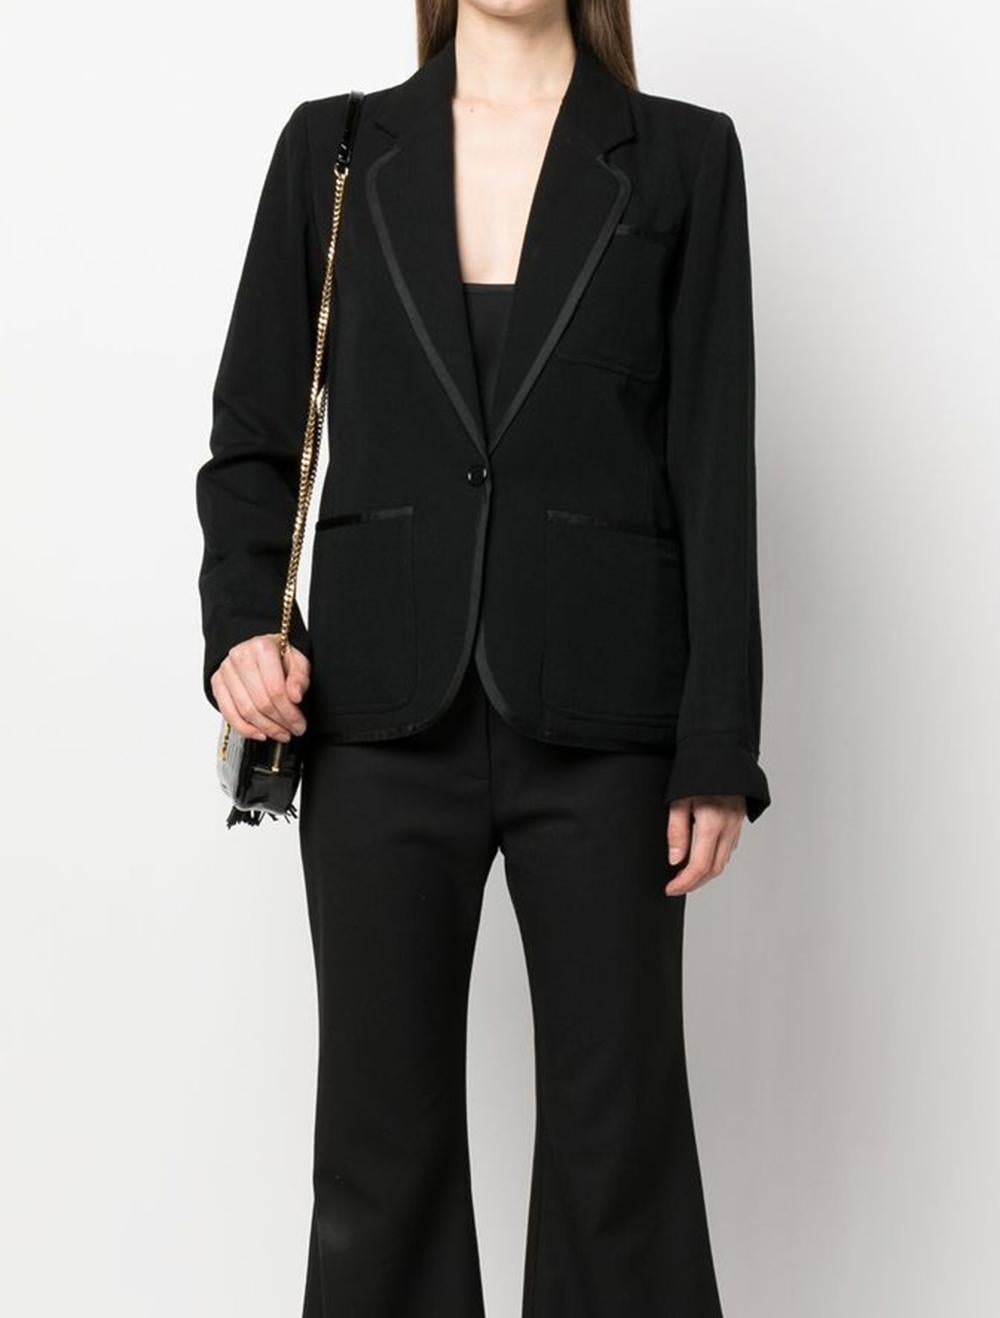 Schwarzer Woll-Smoking-Blazer von YSL Yves Saint Laurent mit folgenden Eigenschaften: kontrastierende Besätze, gekerbtes Revers, Knopfverschluss vorne, aufgesetzte Brusttasche, zwei aufgesetzte Taschen vorne, lange Ärmel, geteilte Manschetten,